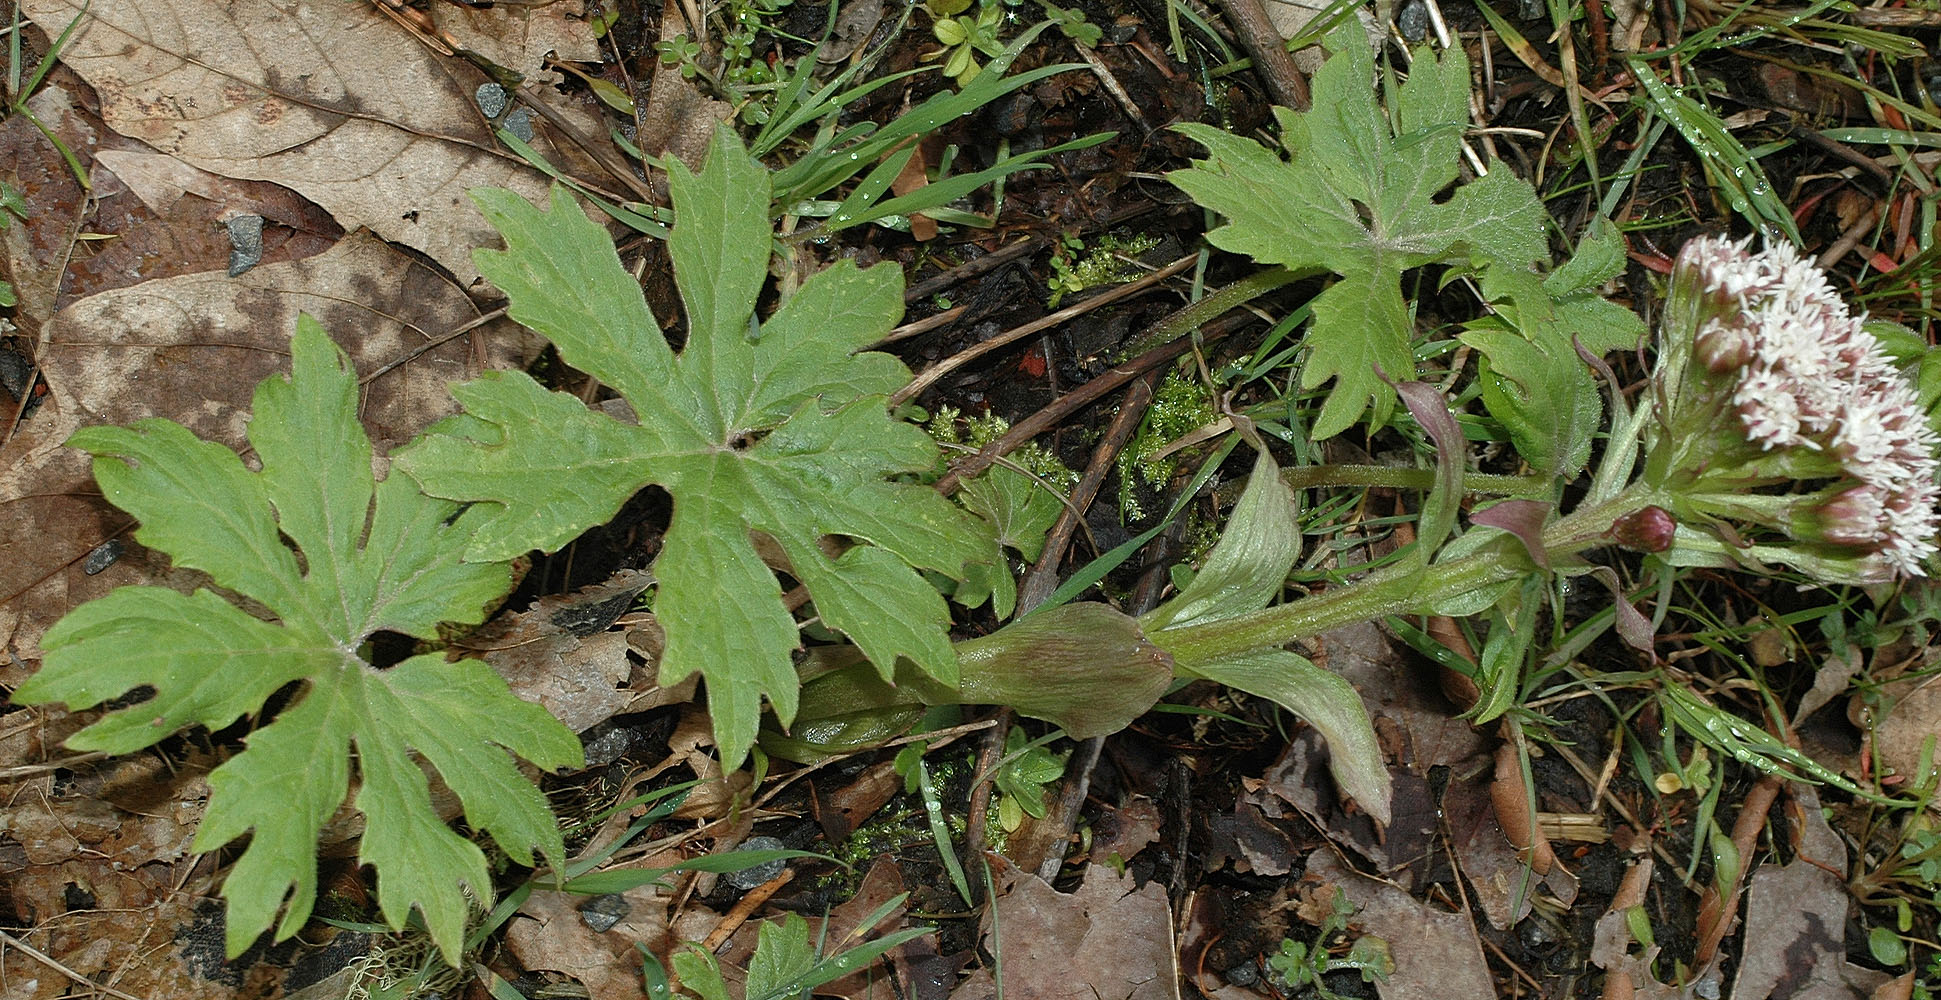 Flora of Eastern Washington Image: Petasites frigidus